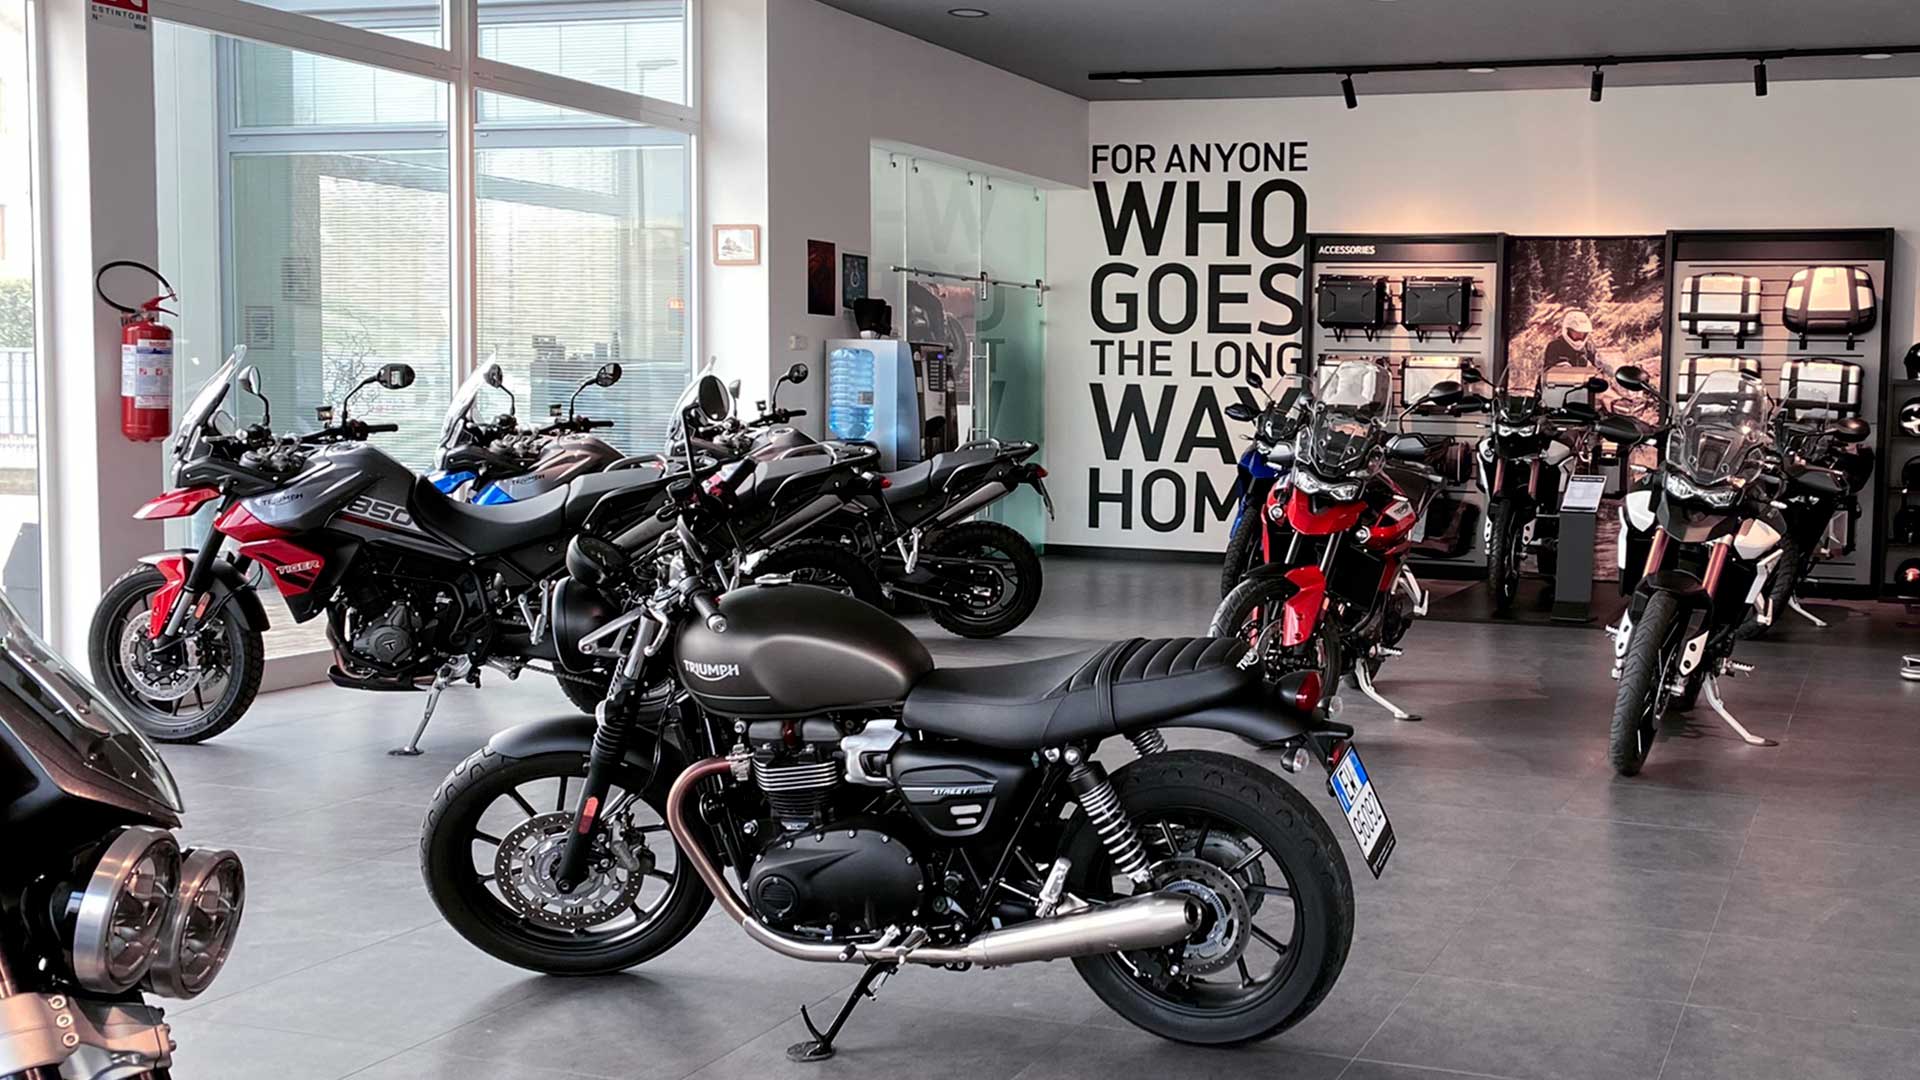 Triumph motorcycles dealership in Reggio Emilia